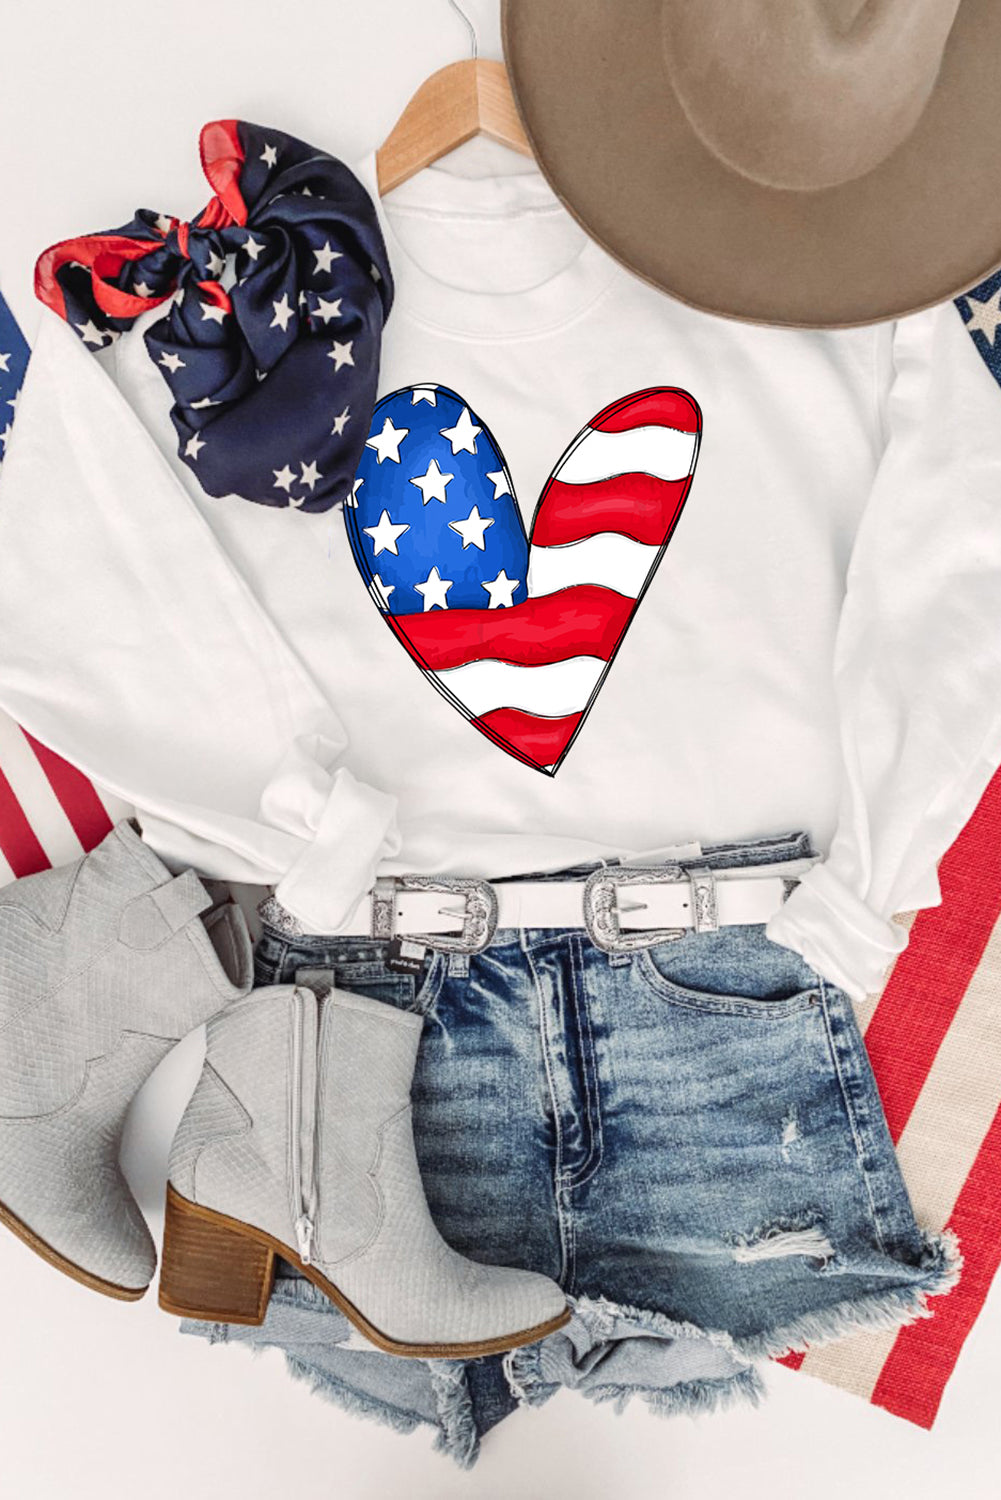 Bel pulover z dolgimi rokavi s potiskom srčkov ameriške zastave